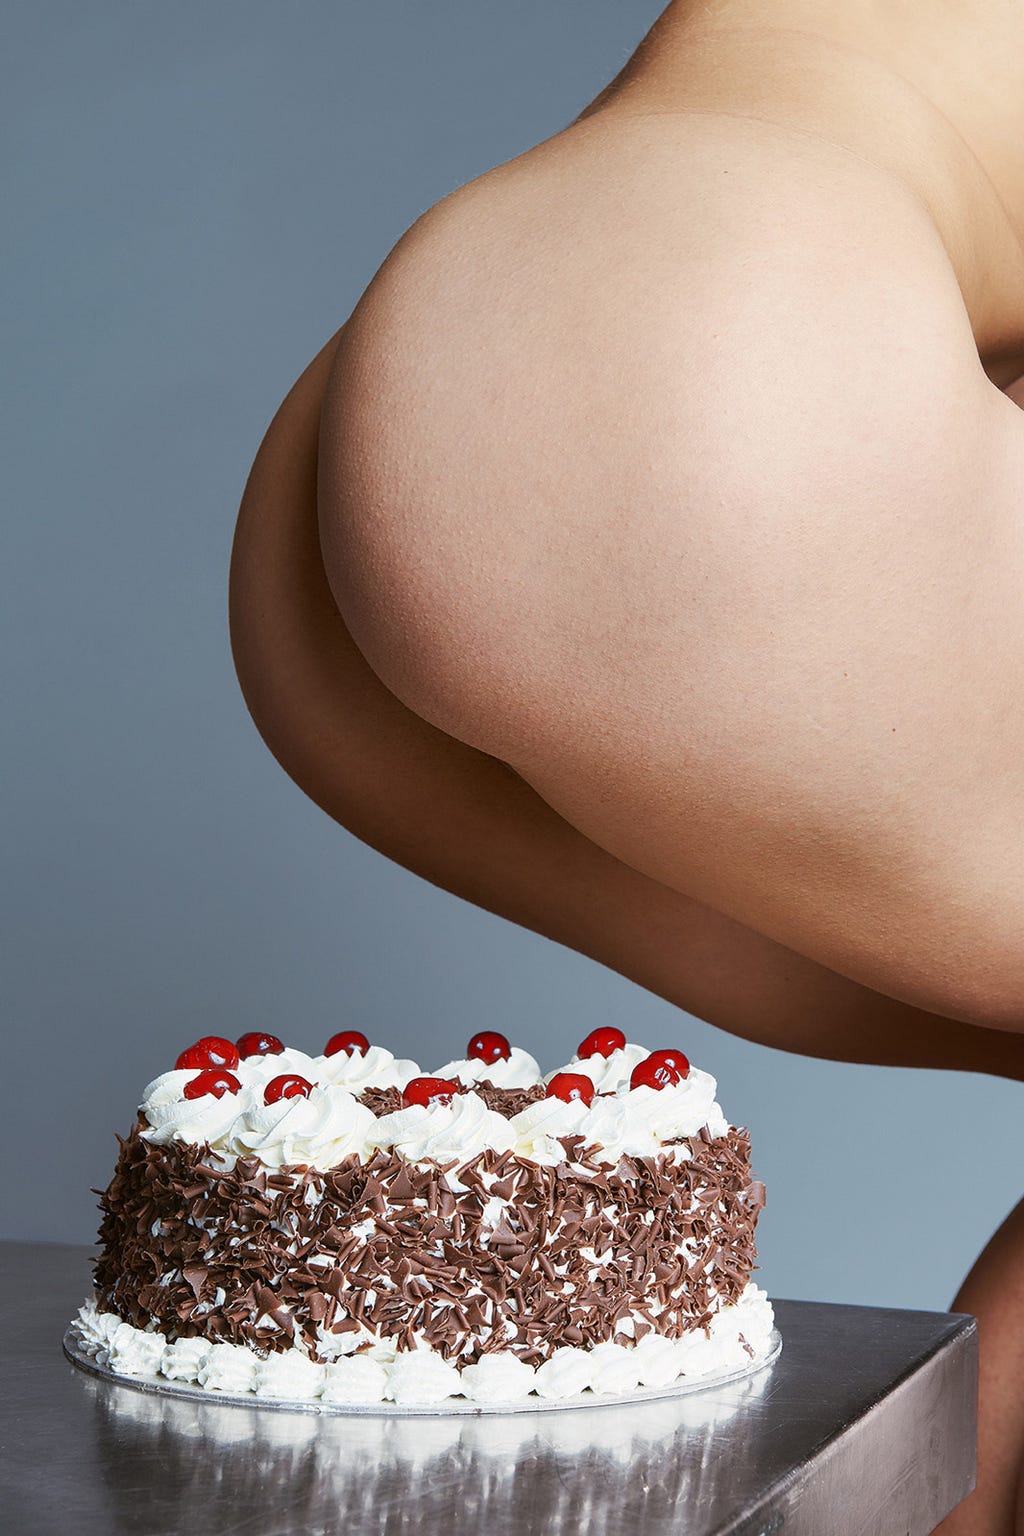 Butt crush birthday cake